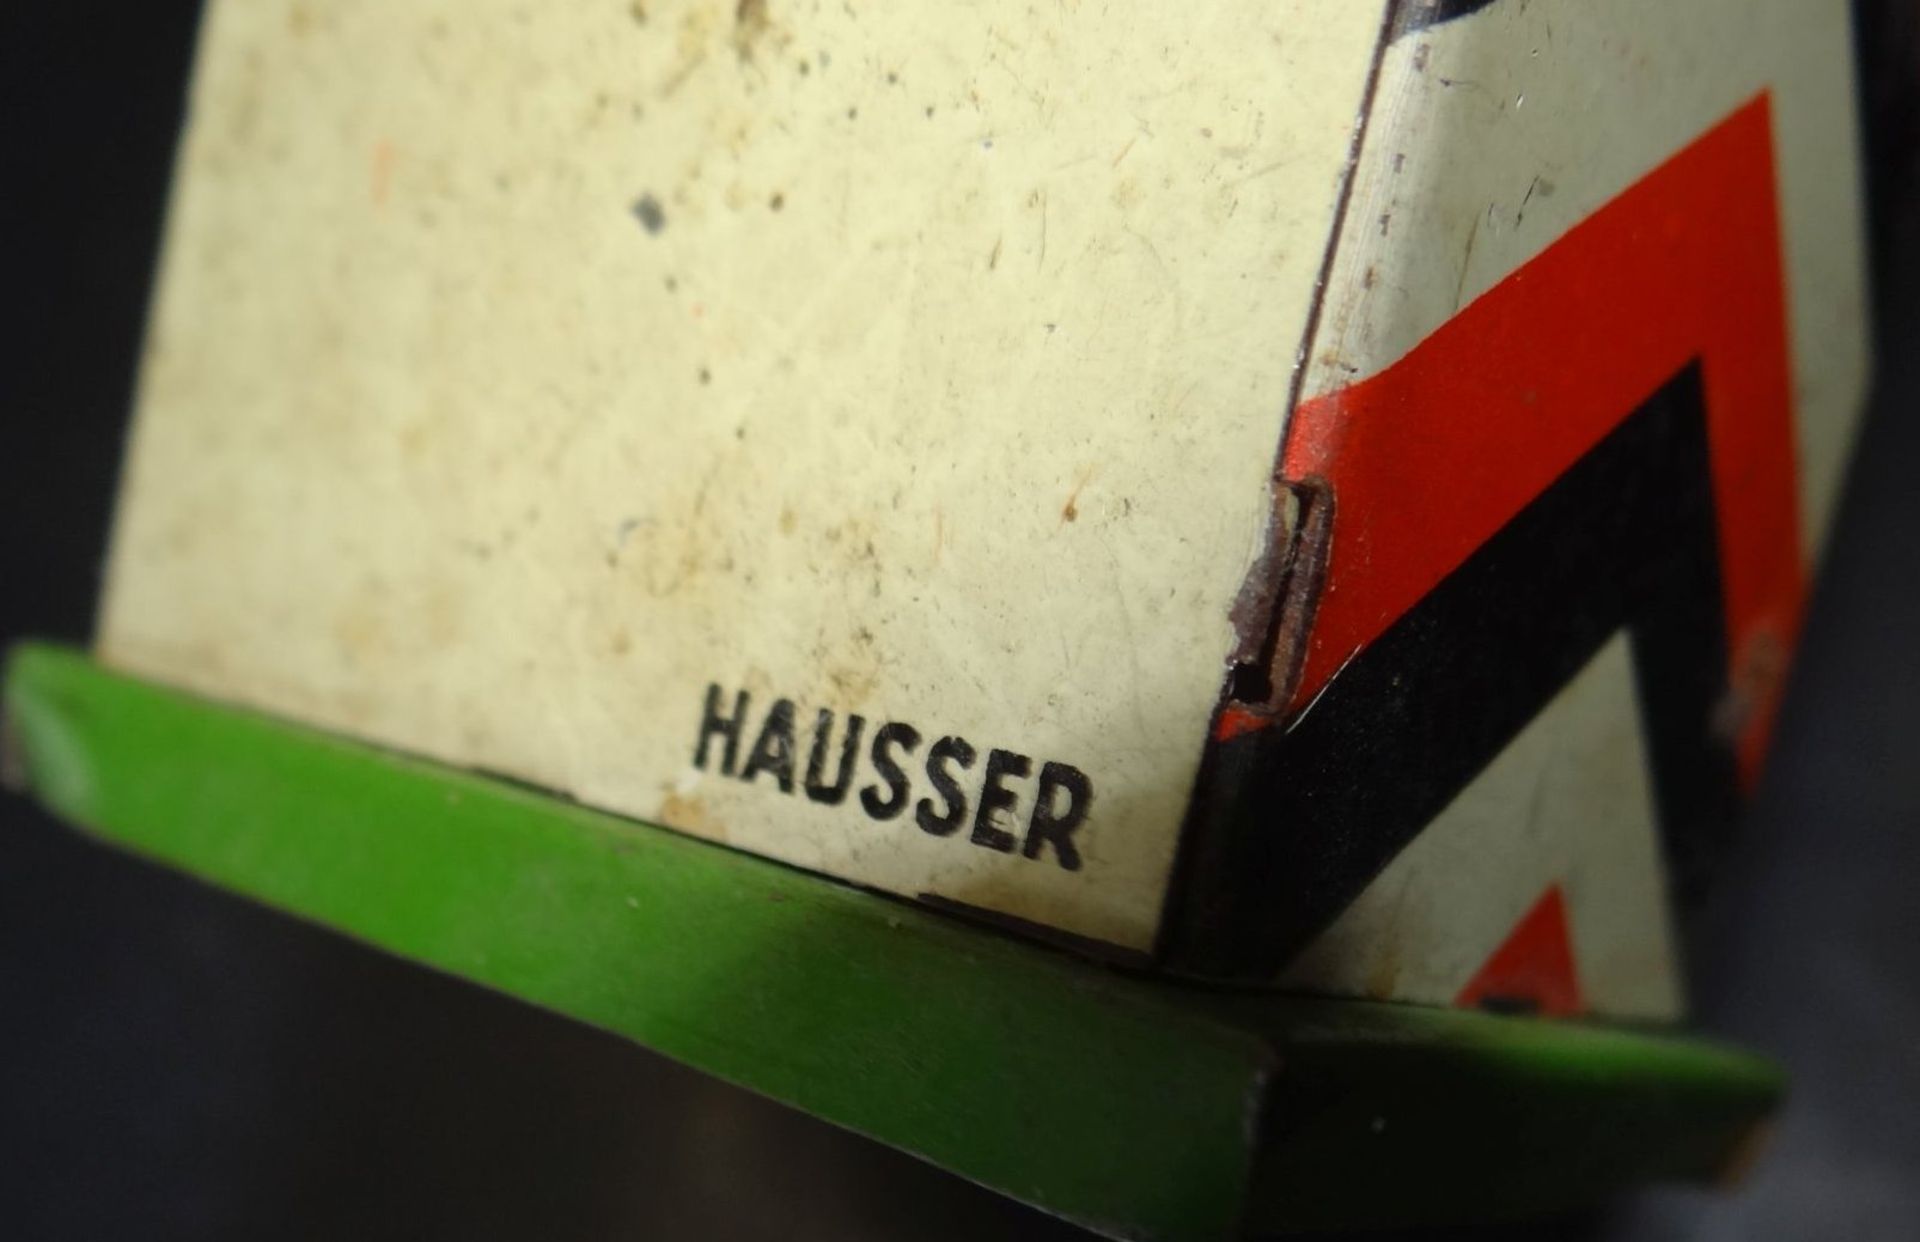 Blech-Wachhäuschen von "Hausser", H-11 cm, - Image 3 of 3